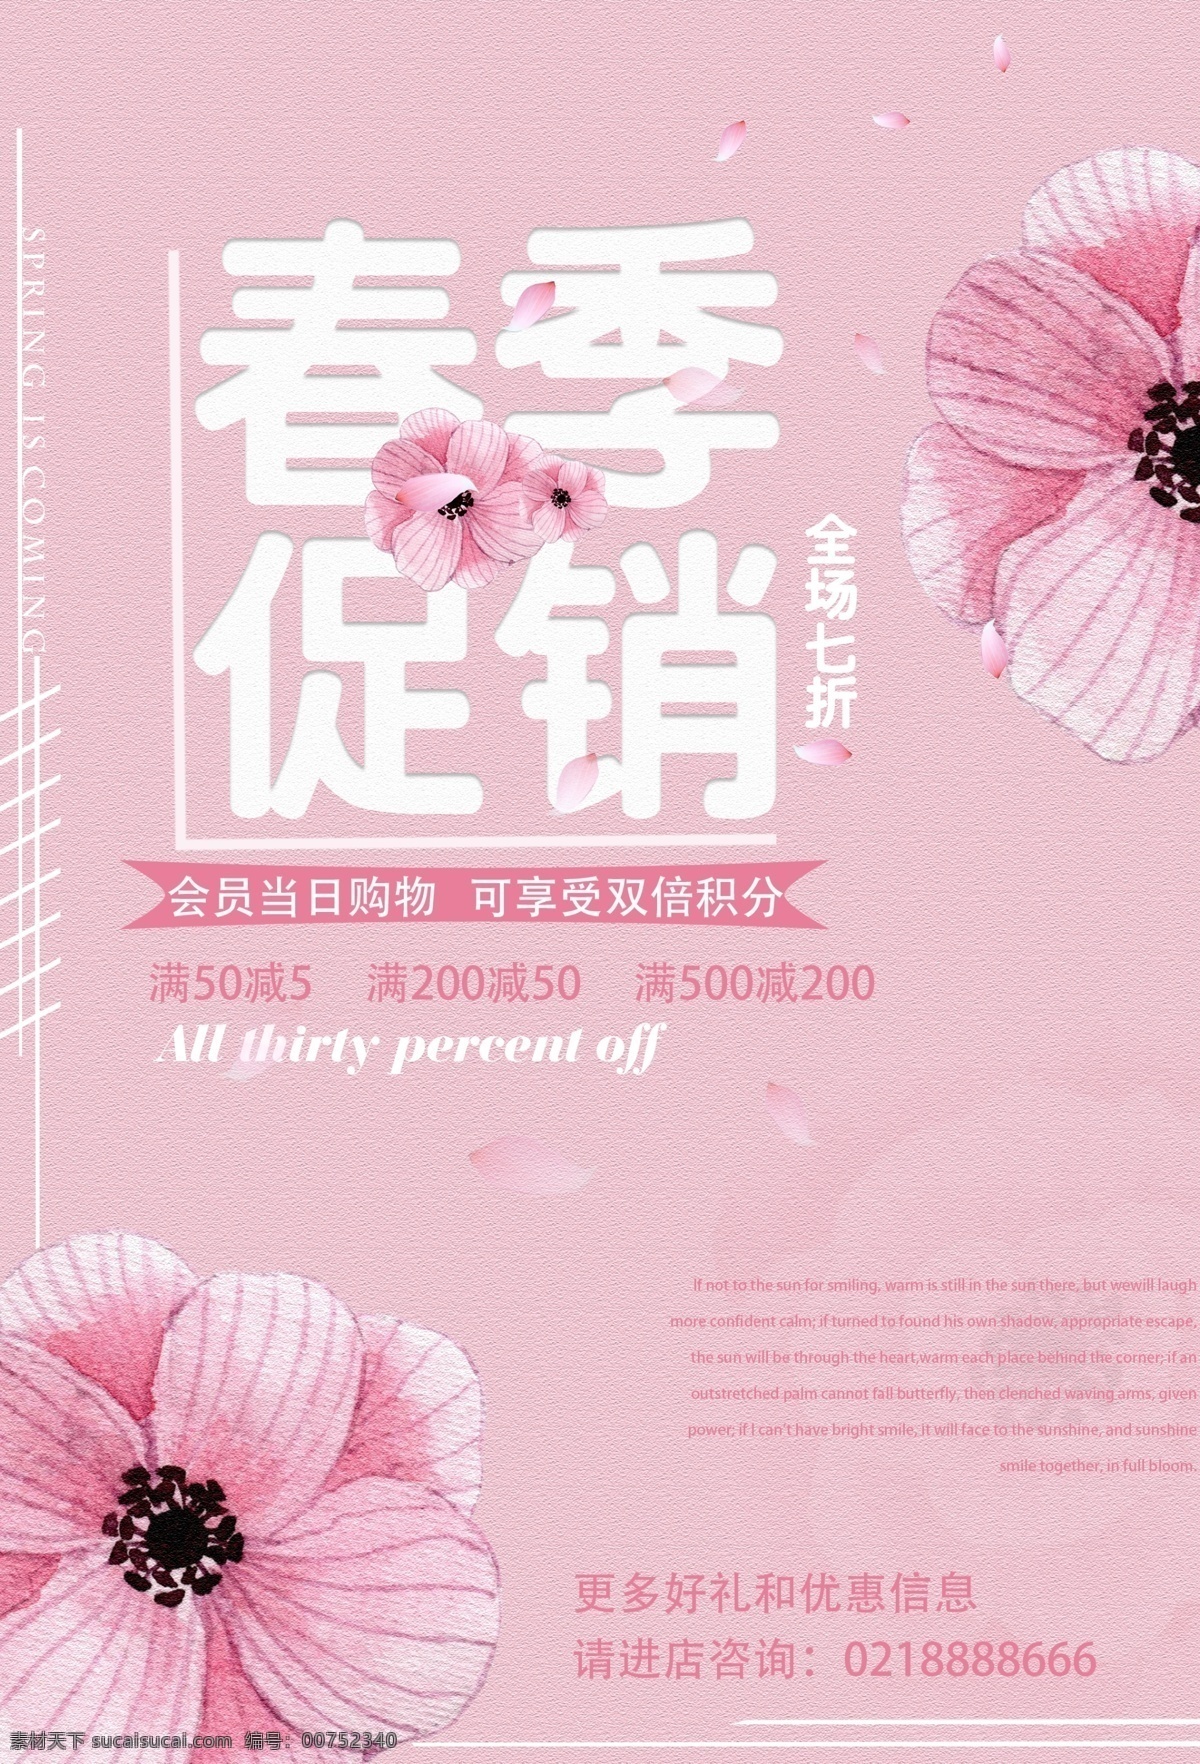 春季 粉色 促销 海报 高清 简约 简洁 展板 全场七折